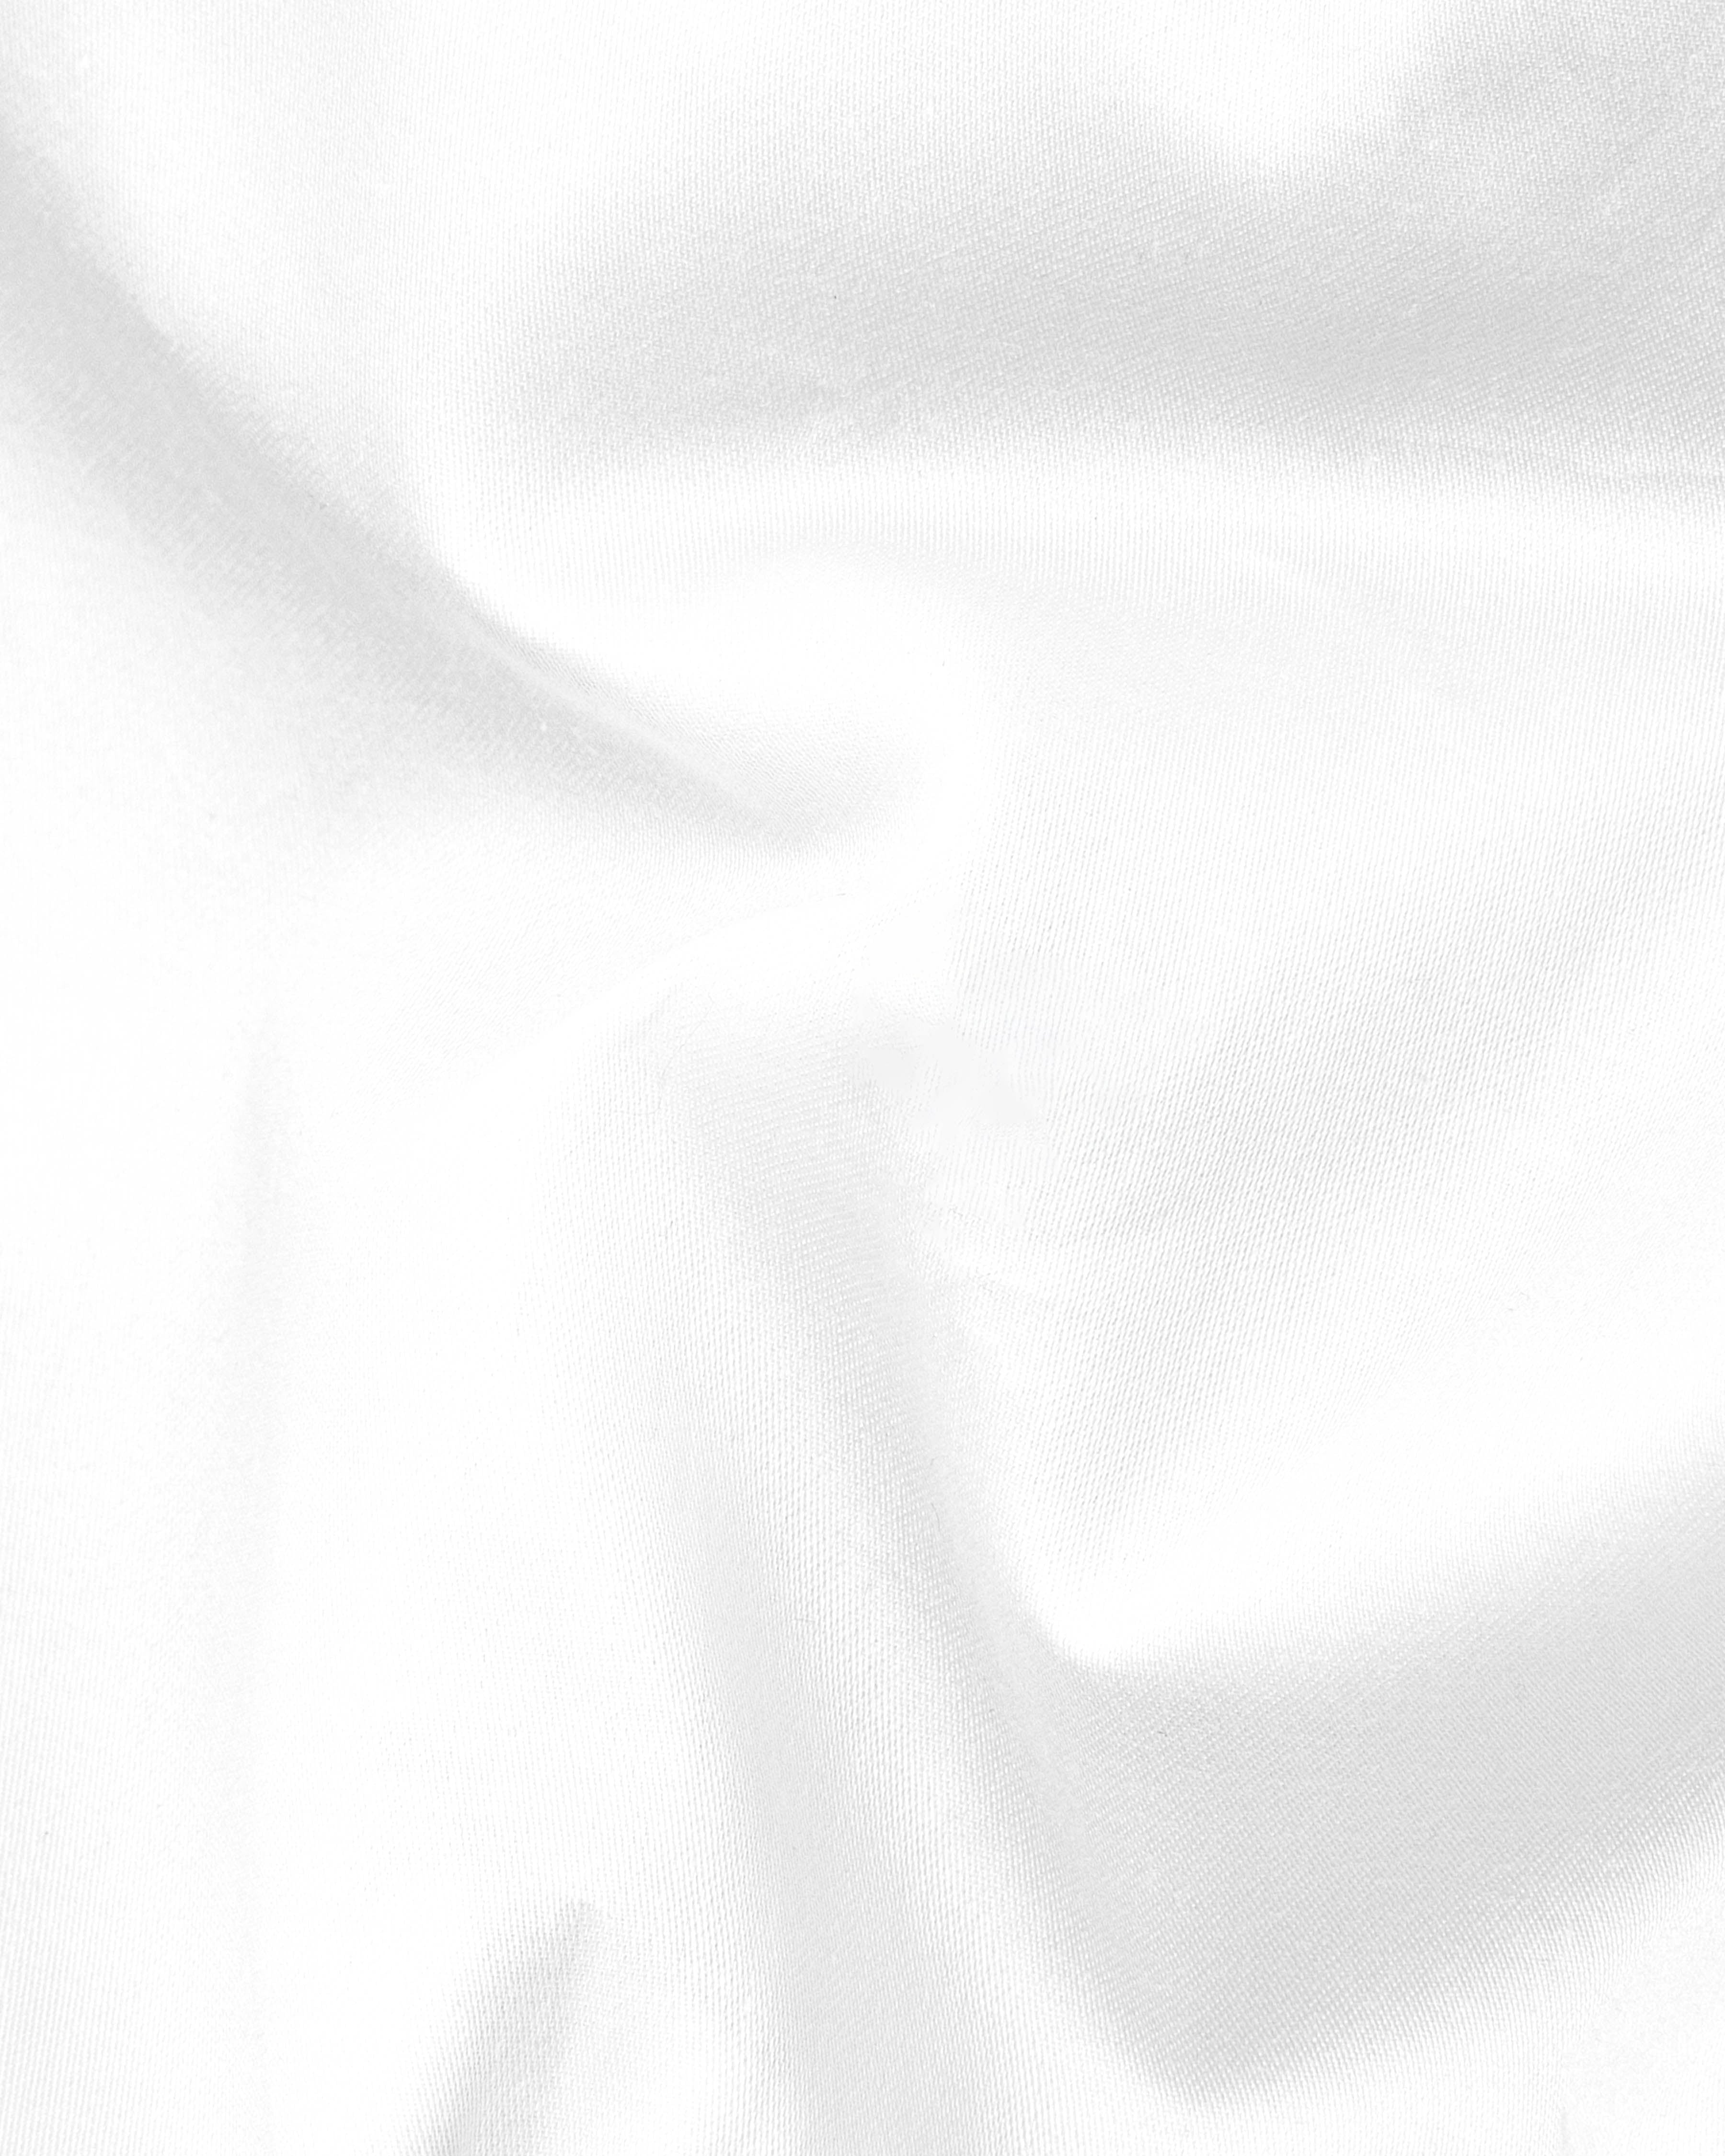 Bright White Subtle Sheen with Black Patterned Super Soft Giza Cotton SHIRT 2855BLK-P11-38, 2855BLK-P11-H-38, 2855BLK-P11-39, 2855BLK-P11-H-39, 2855BLK-P11-40, 2855BLK-P11-H-40, 2855BLK-P11-42, 2855BLK-P11-H-42, 2855BLK-P11-44, 2855BLK-P11-H-44, 2855BLK-P11-46, 2855BLK-P11-H-46, 2855BLK-P11-48, 2855BLK-P11-H-48, 2855BLK-P11-50, 2855BLK-P11-H-50, 2855BLK-P11-52, 2855BLK-P11-H-52